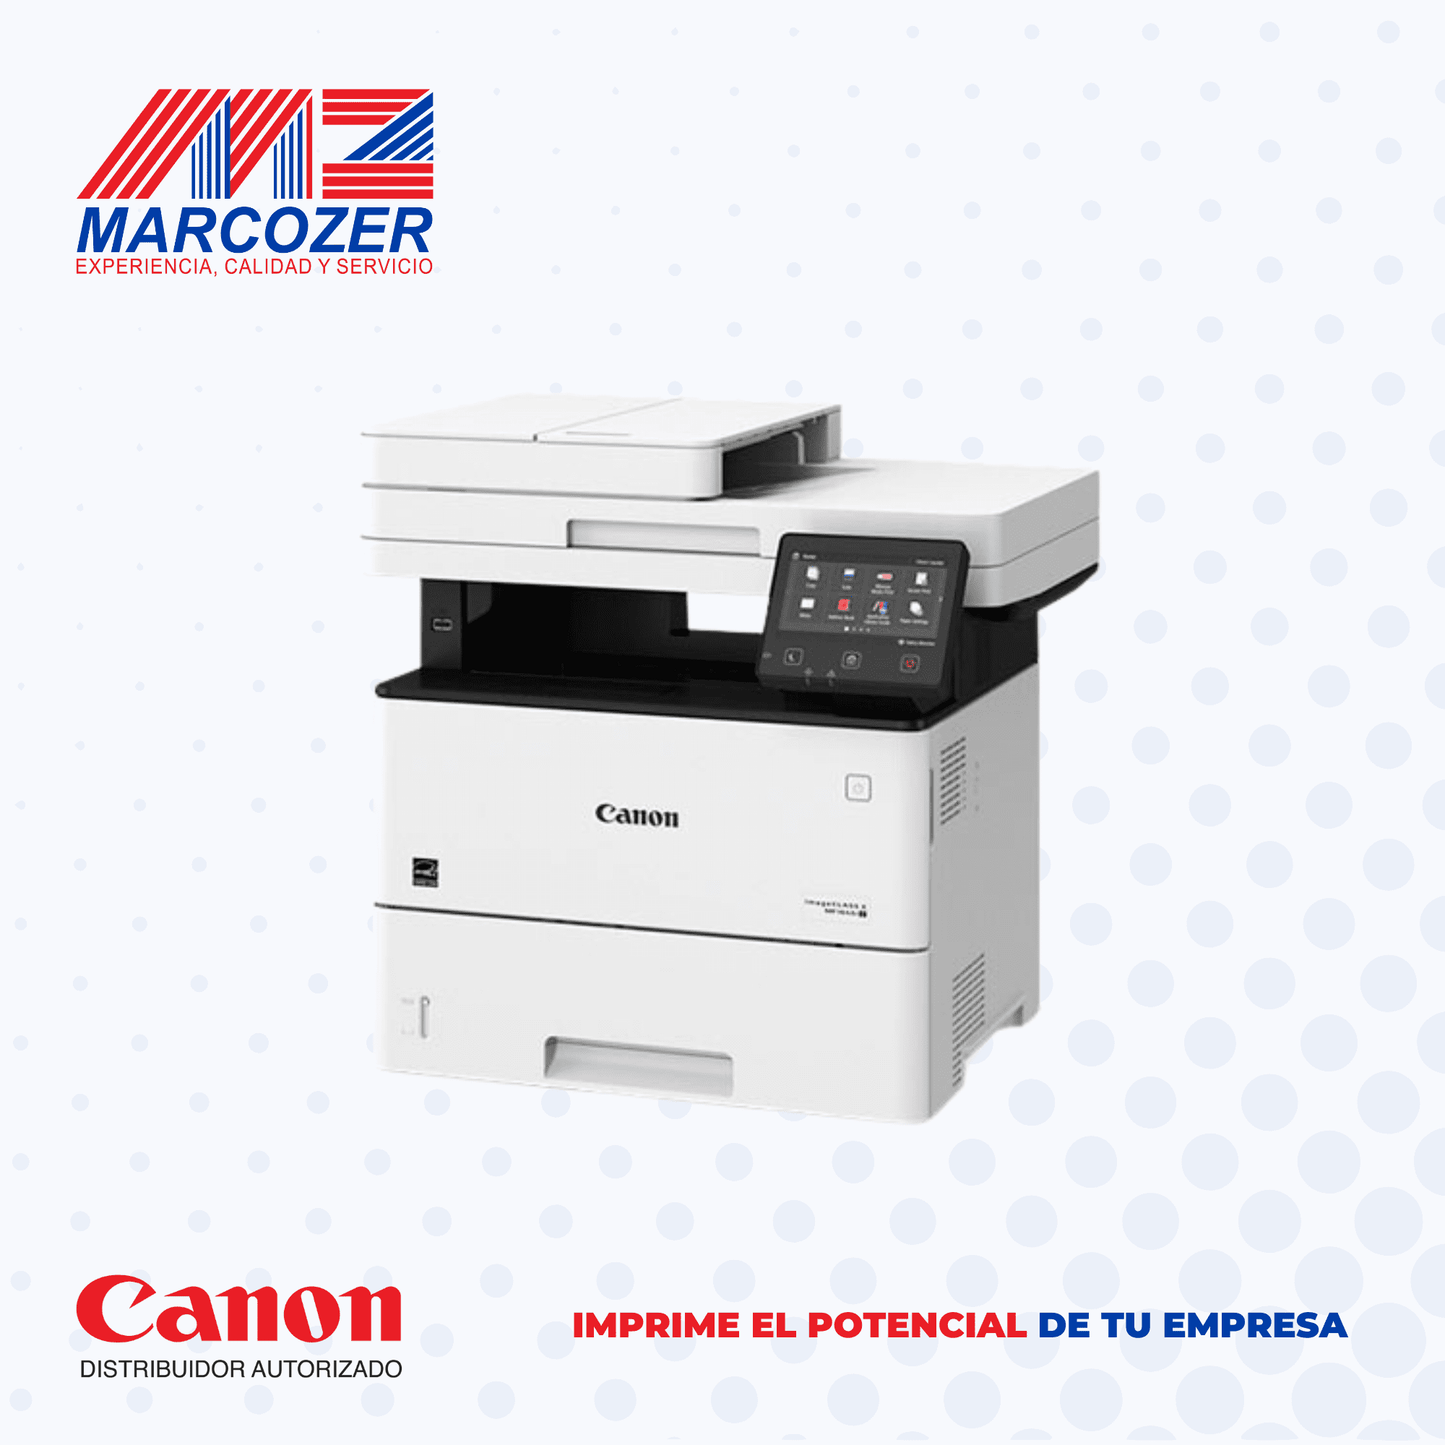 Equipo Multifuncional B/N - Imprime, Escanea y Fotocopia - iR 1643iF II